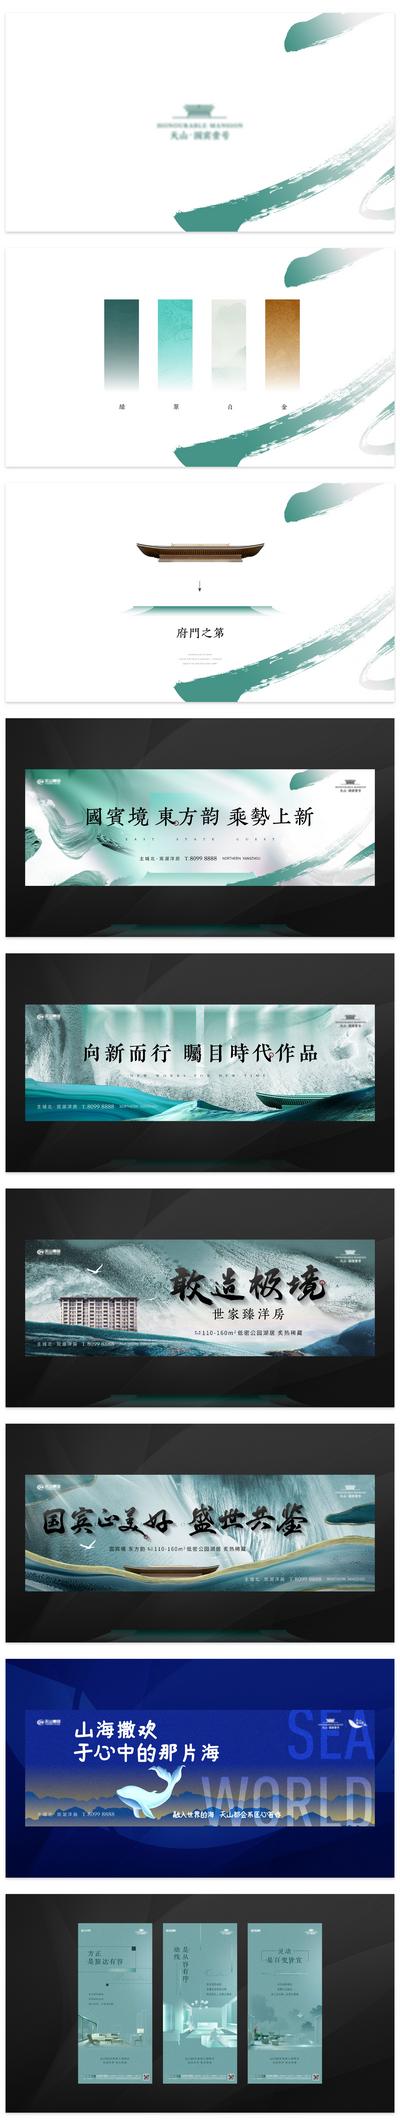 南门网 海报 地产 中国传统节日 七夕 情人节 牛郎织女 喜鹊 系列